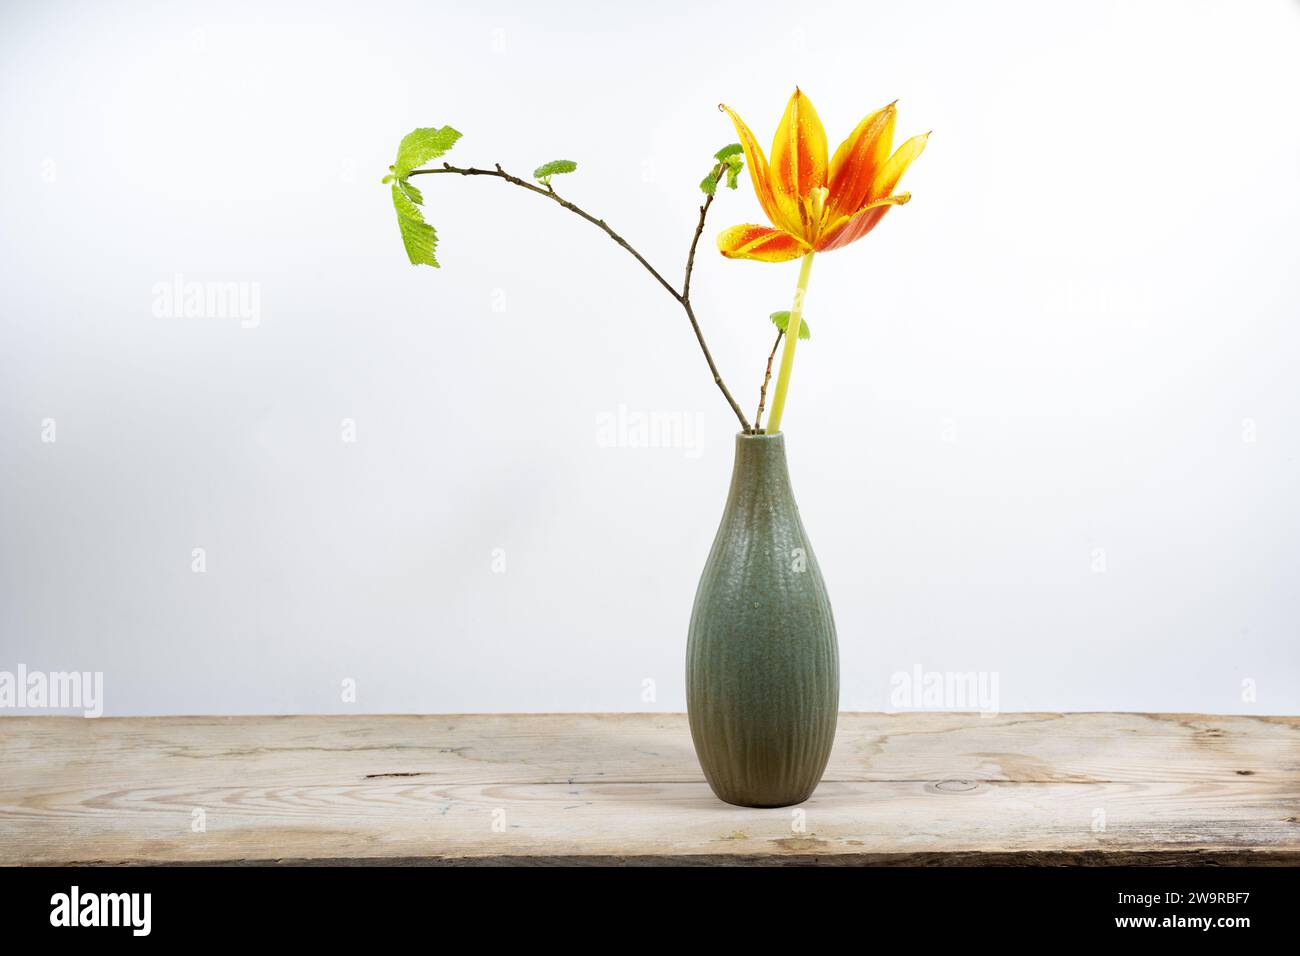 Solo flor de tulipán naranja y una rama de primavera en un pequeño florero en un tablero de madera contra un fondo claro, decoración de temporada, espacio de copia, seleccionado Foto de stock